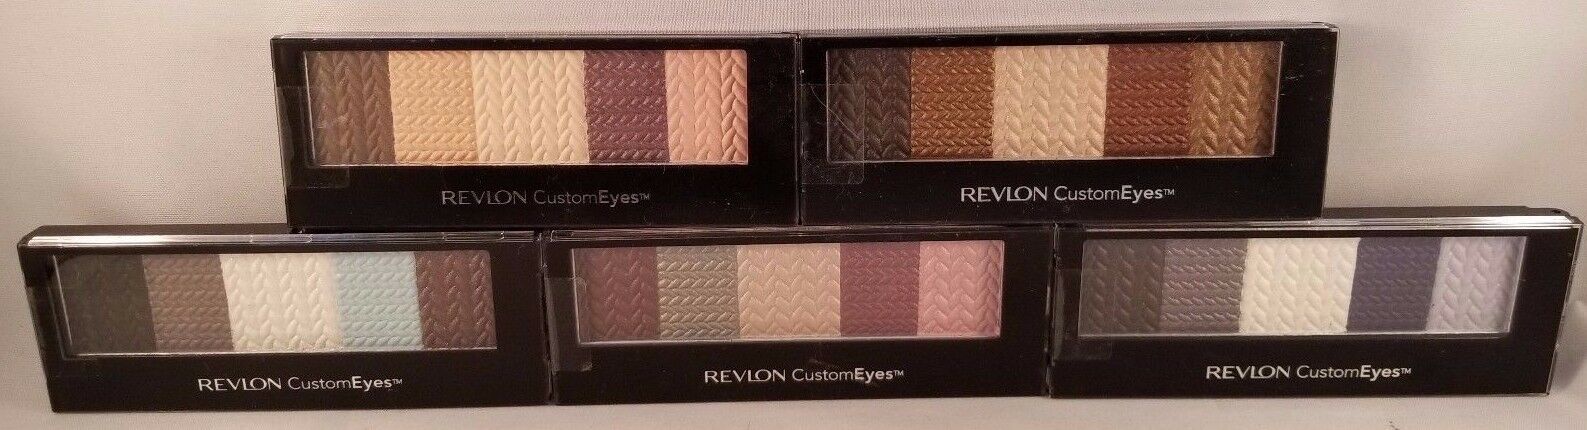 Revlon Custom Eyes Shadow & Liner You Choose Buy 2 Get 1 Free Add 3 To Cart